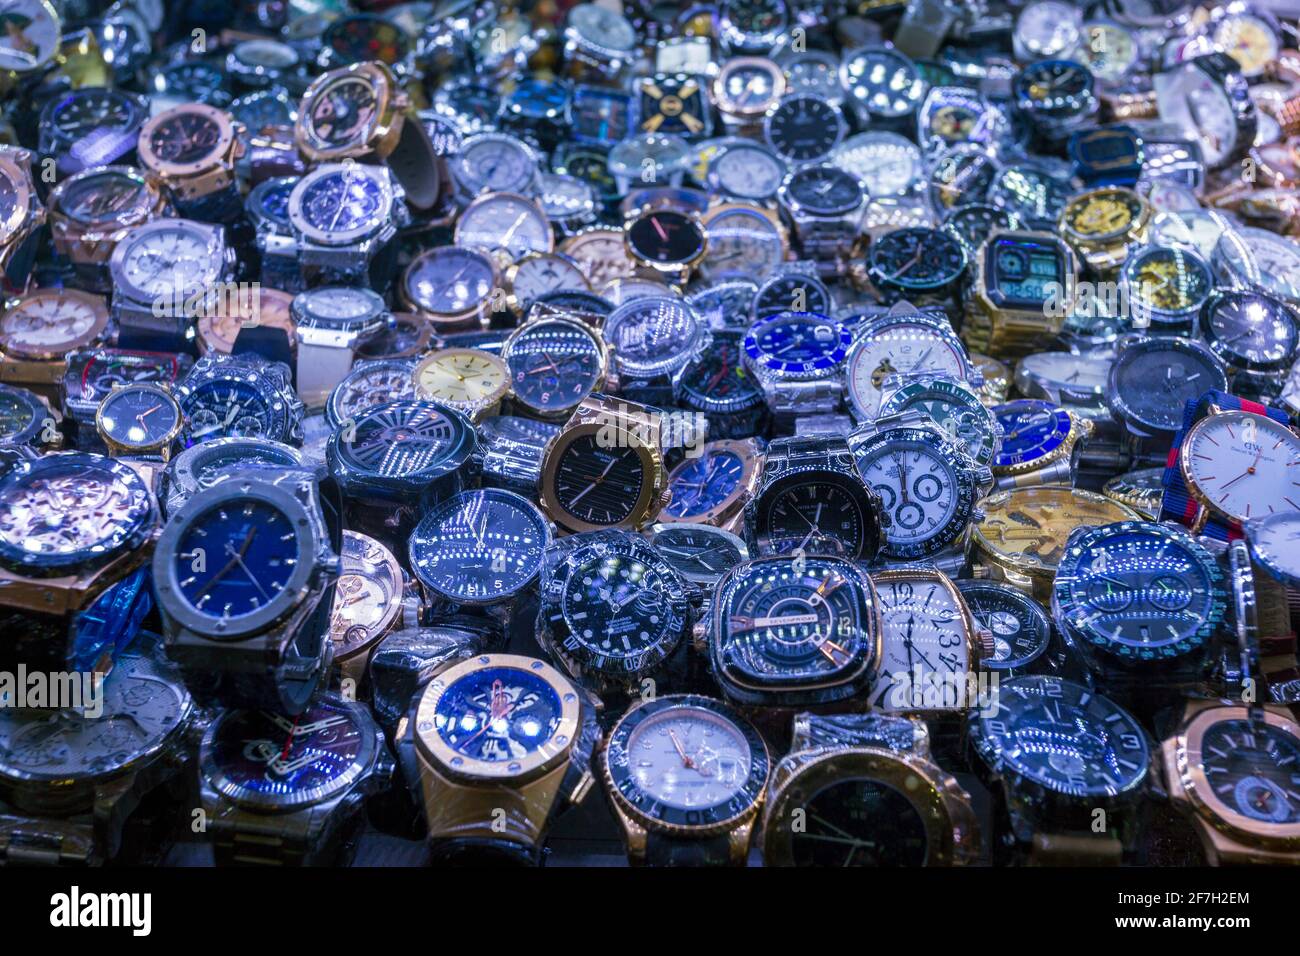 22 febbraio 2020 - Phnom Penh, Cambogia: Un assortimento di orologi contraffatti in vendita nel mercato centrale di Phnom Penh, Cambogia. Foto Stock